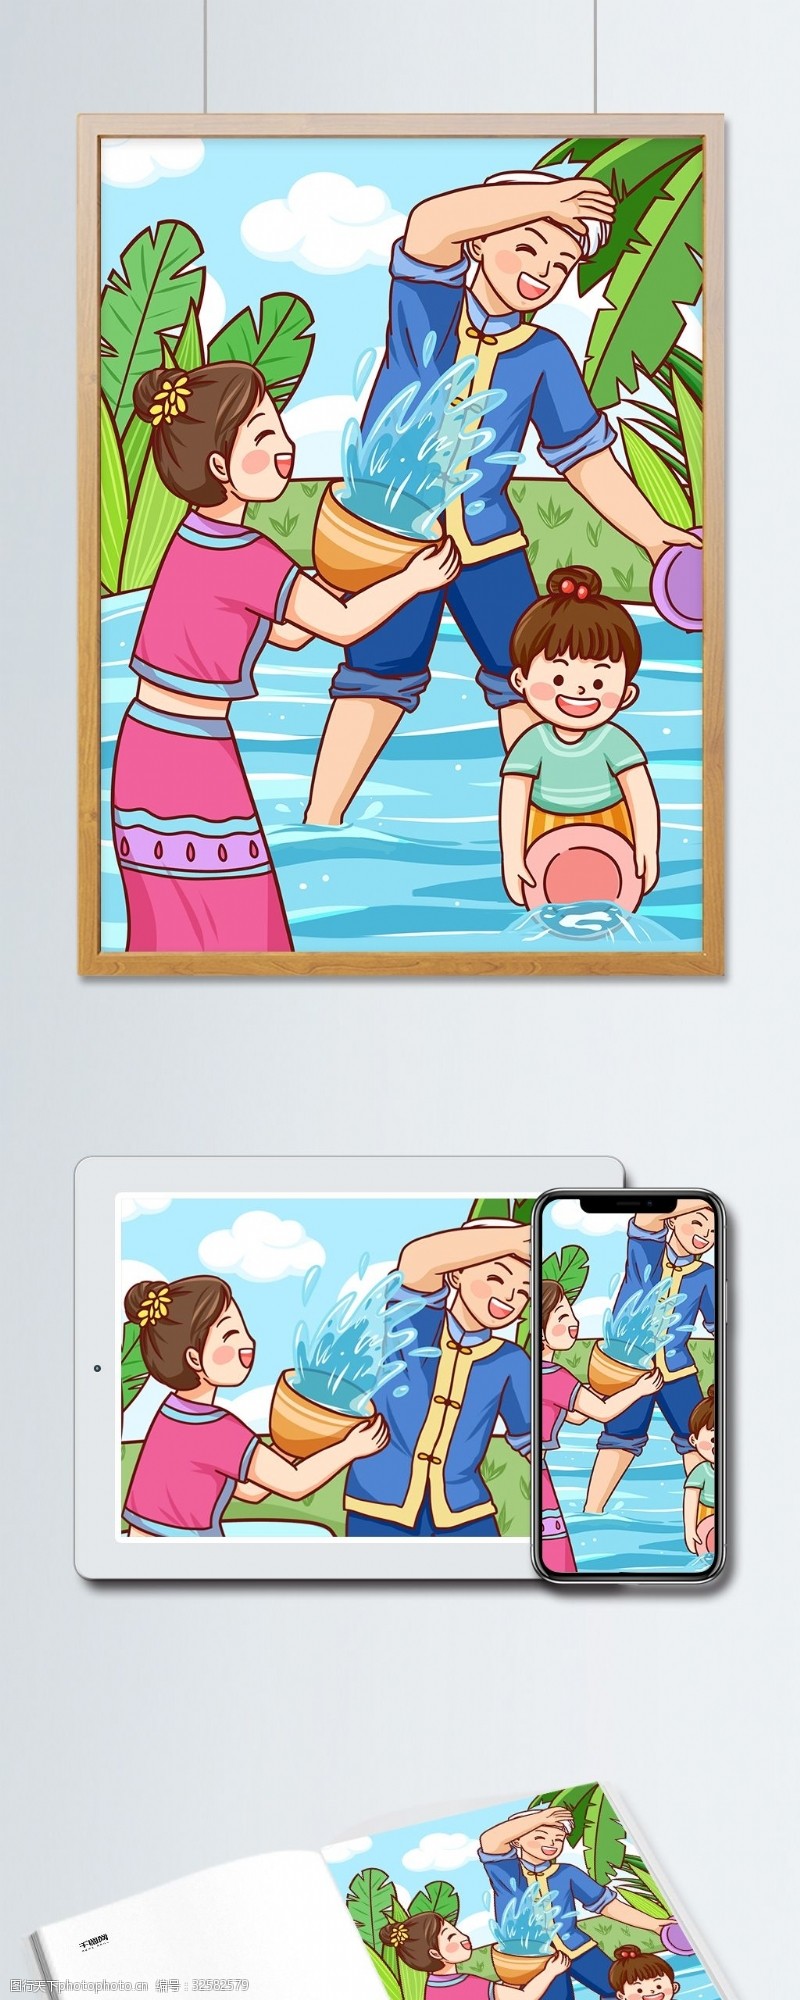 公众号用图传统节日傣族泼水节欢乐泼水玩耍插画